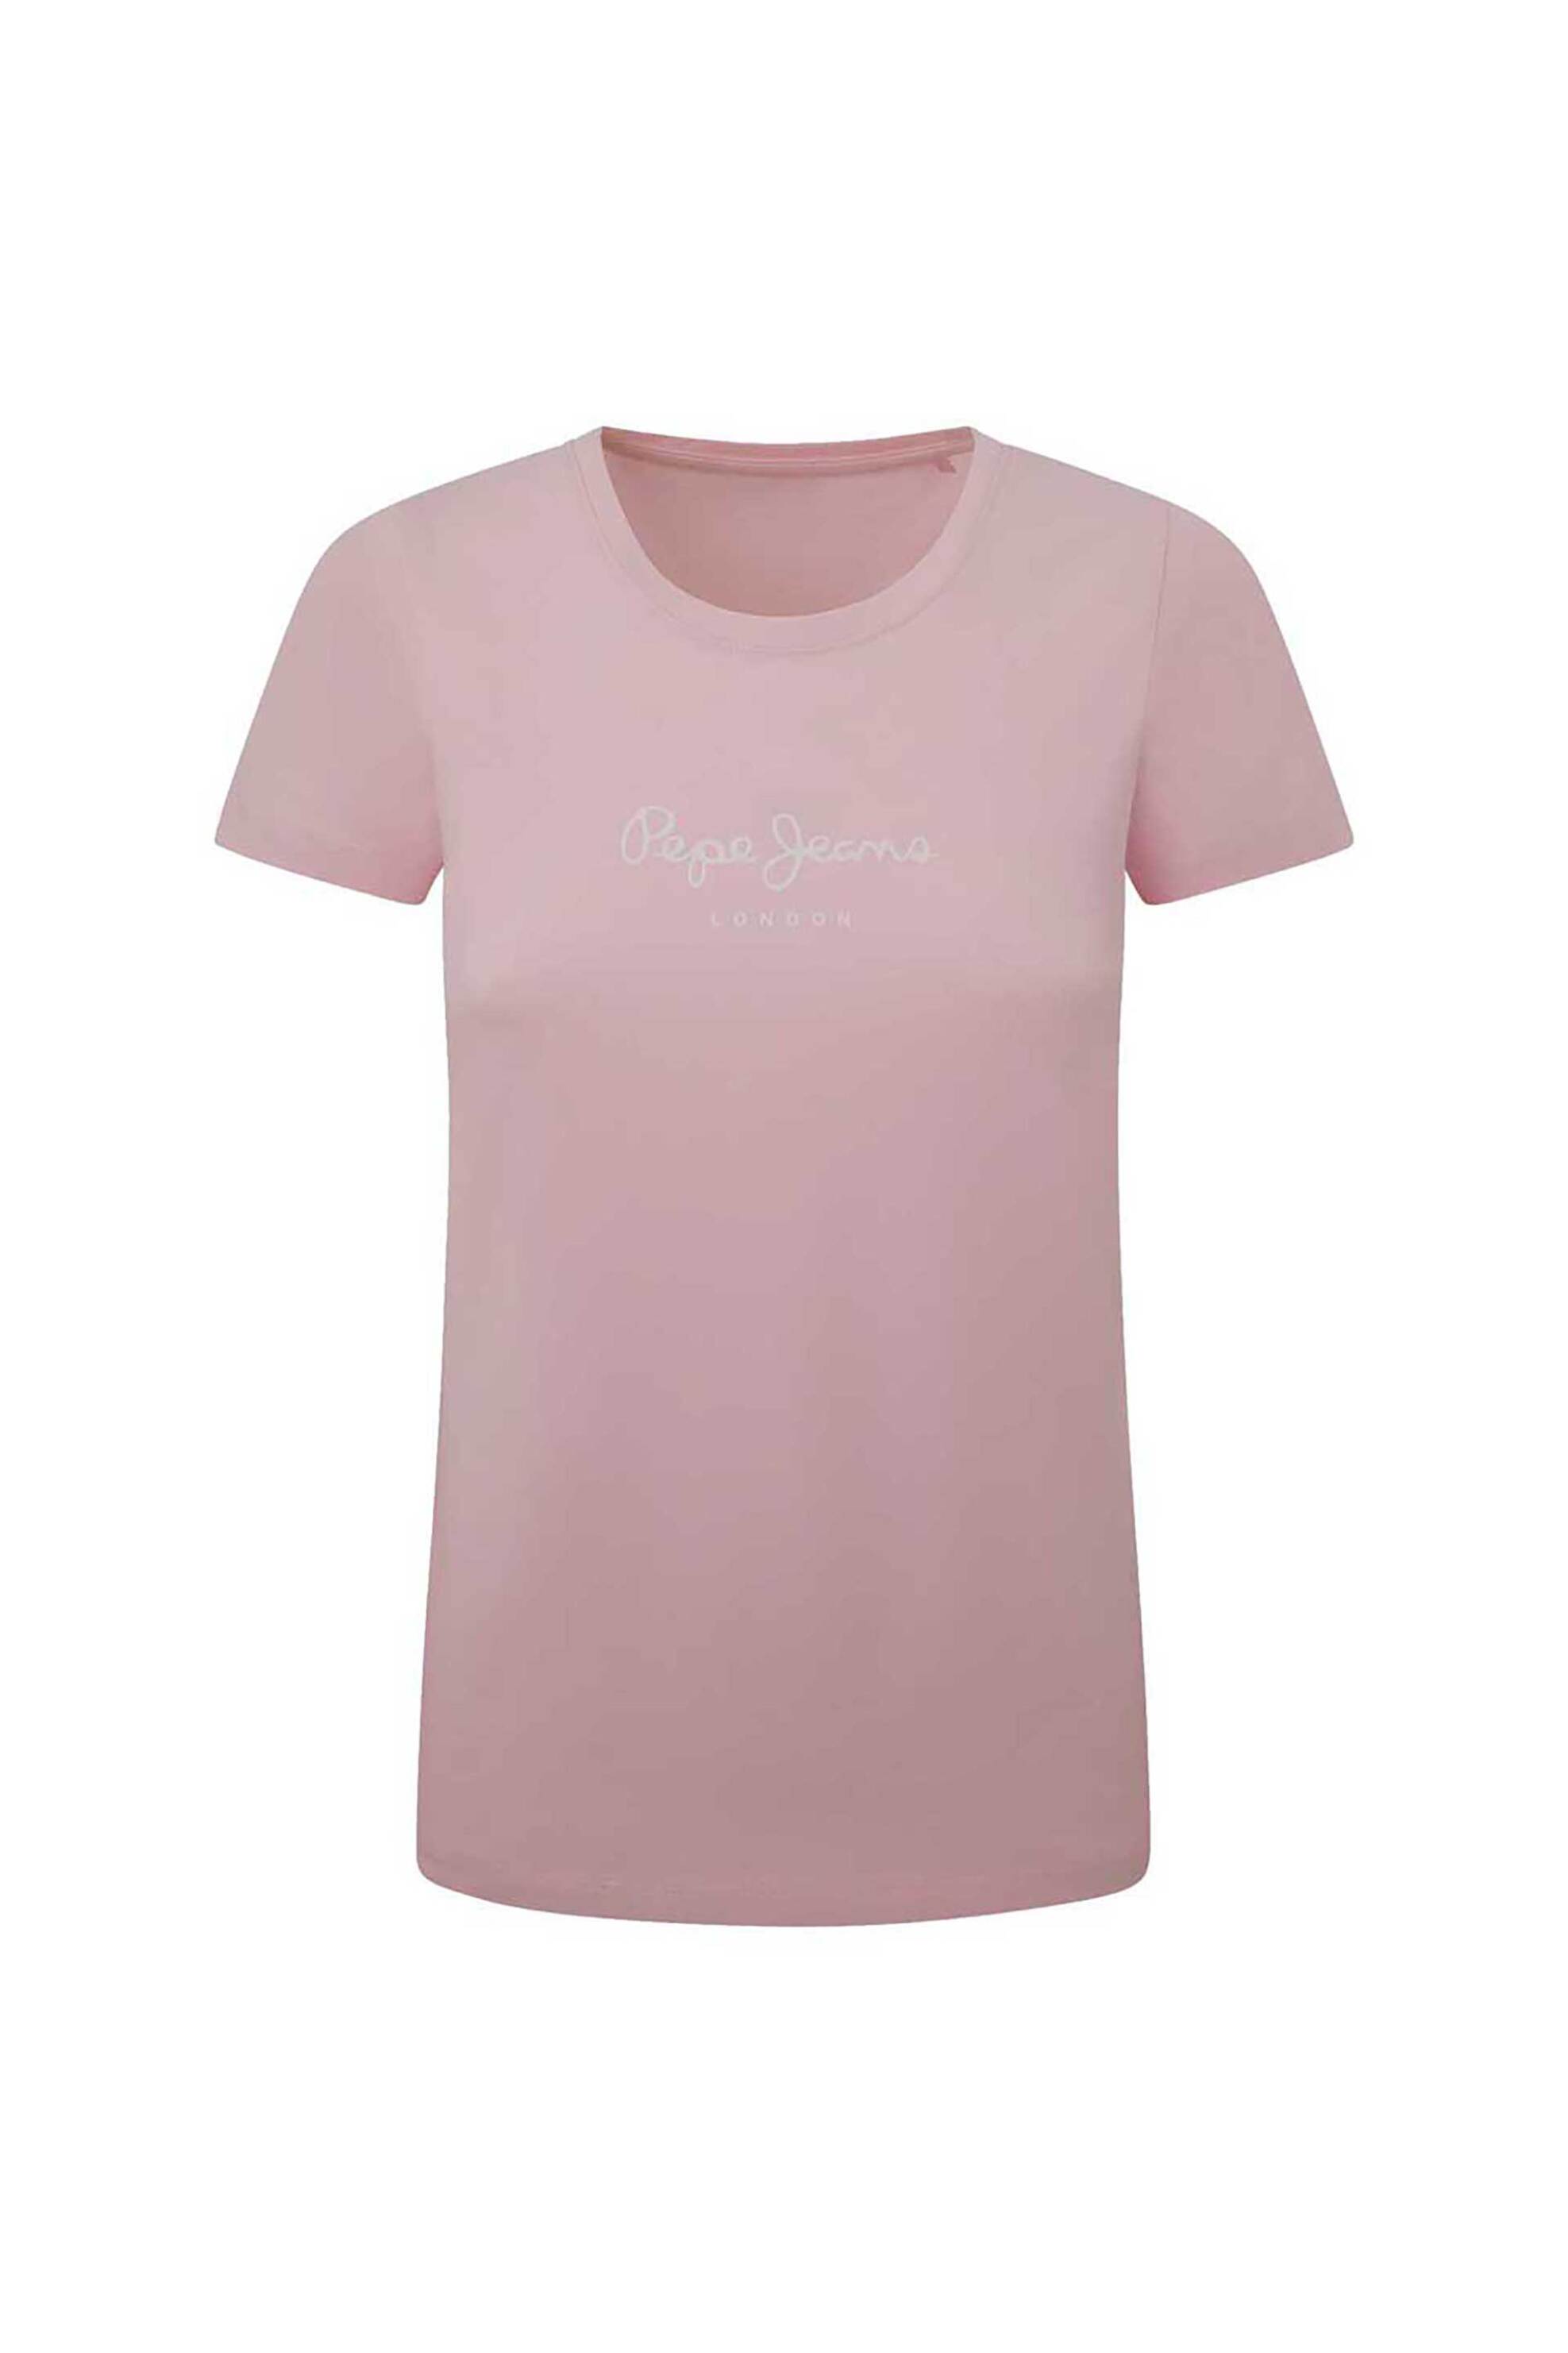 Γυναικεία Ρούχα & Αξεσουάρ > Γυναικεία Ρούχα > Γυναικεία Τοπ > Γυναικεία T-Shirts Pepe Jeans γυναικείο T-shirt μονόχρωμο με logo print - PL505202 Ροζ